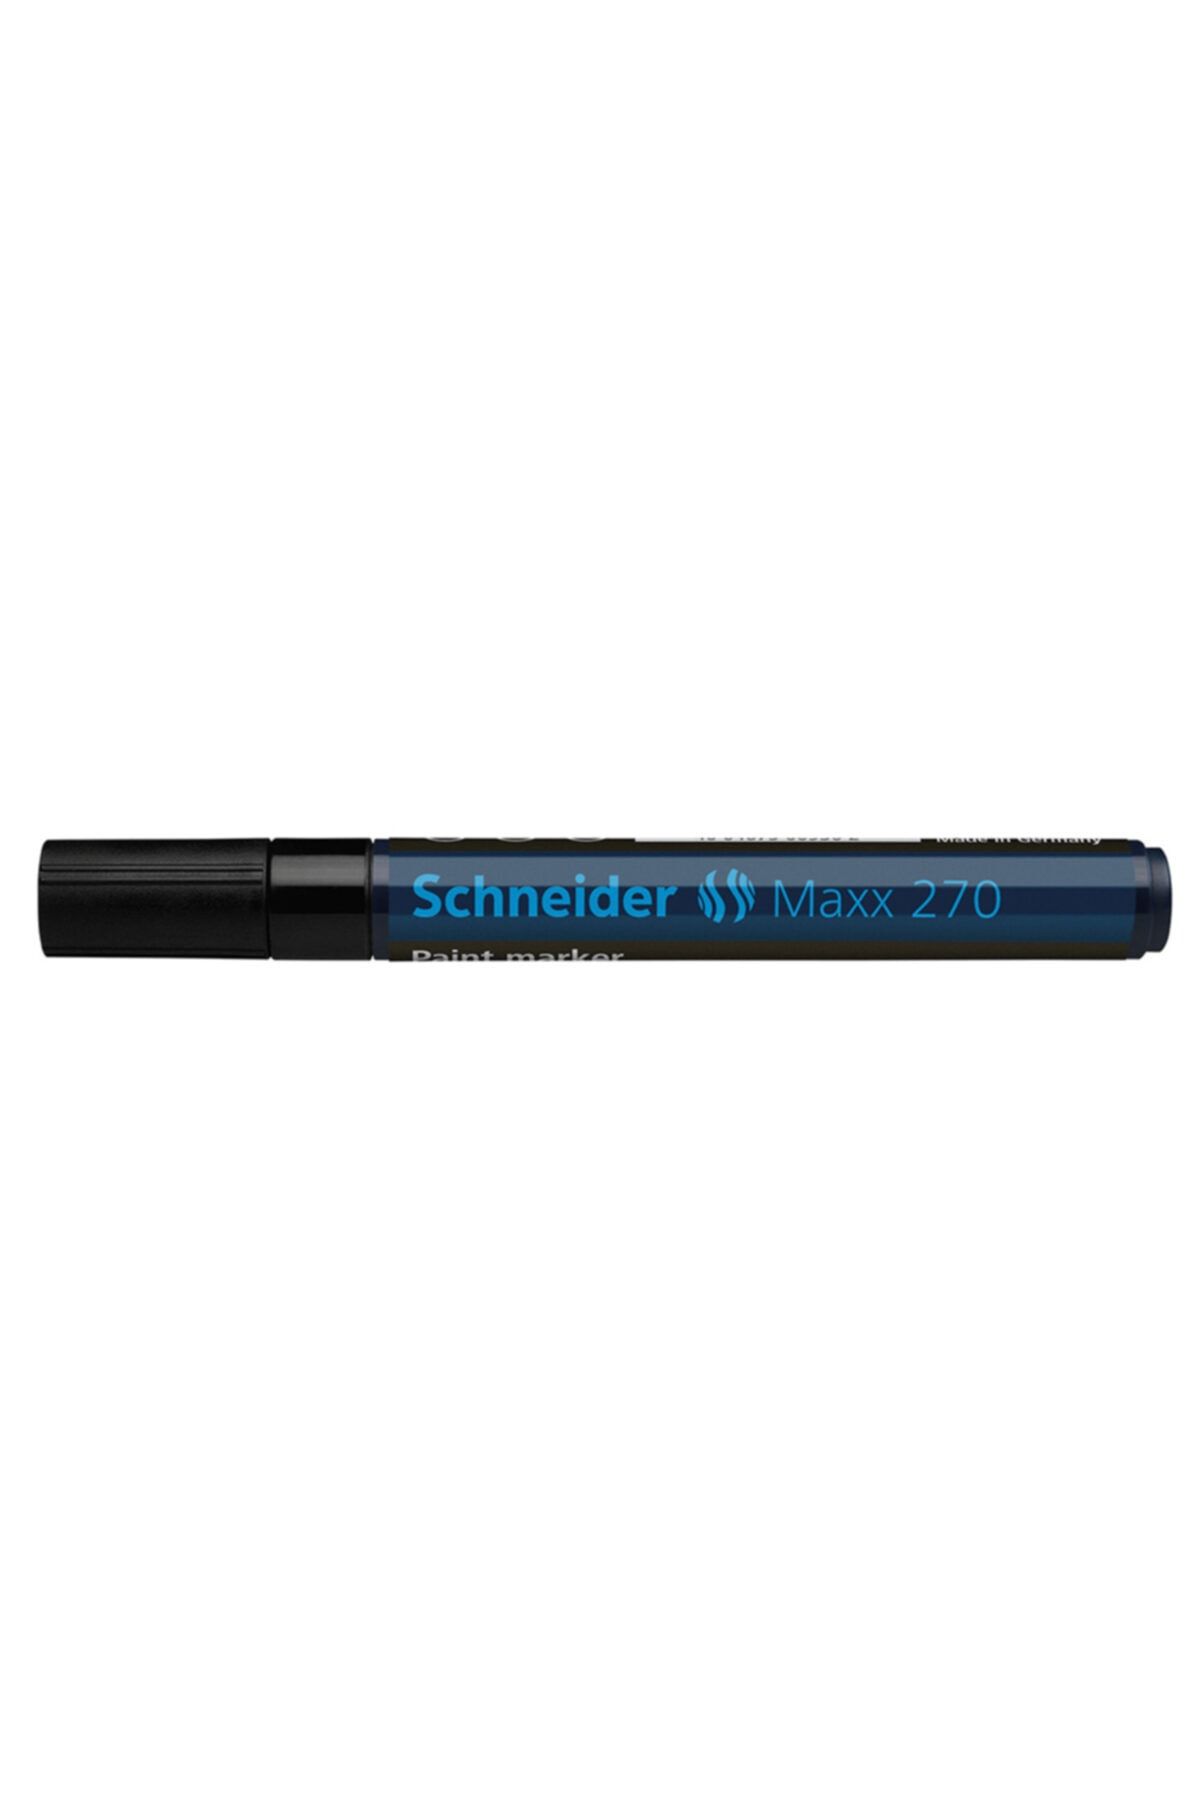 Genel Markalar Schneıder 270 Maxx Boya Markörü 1-3 Mm Siyah Scm310